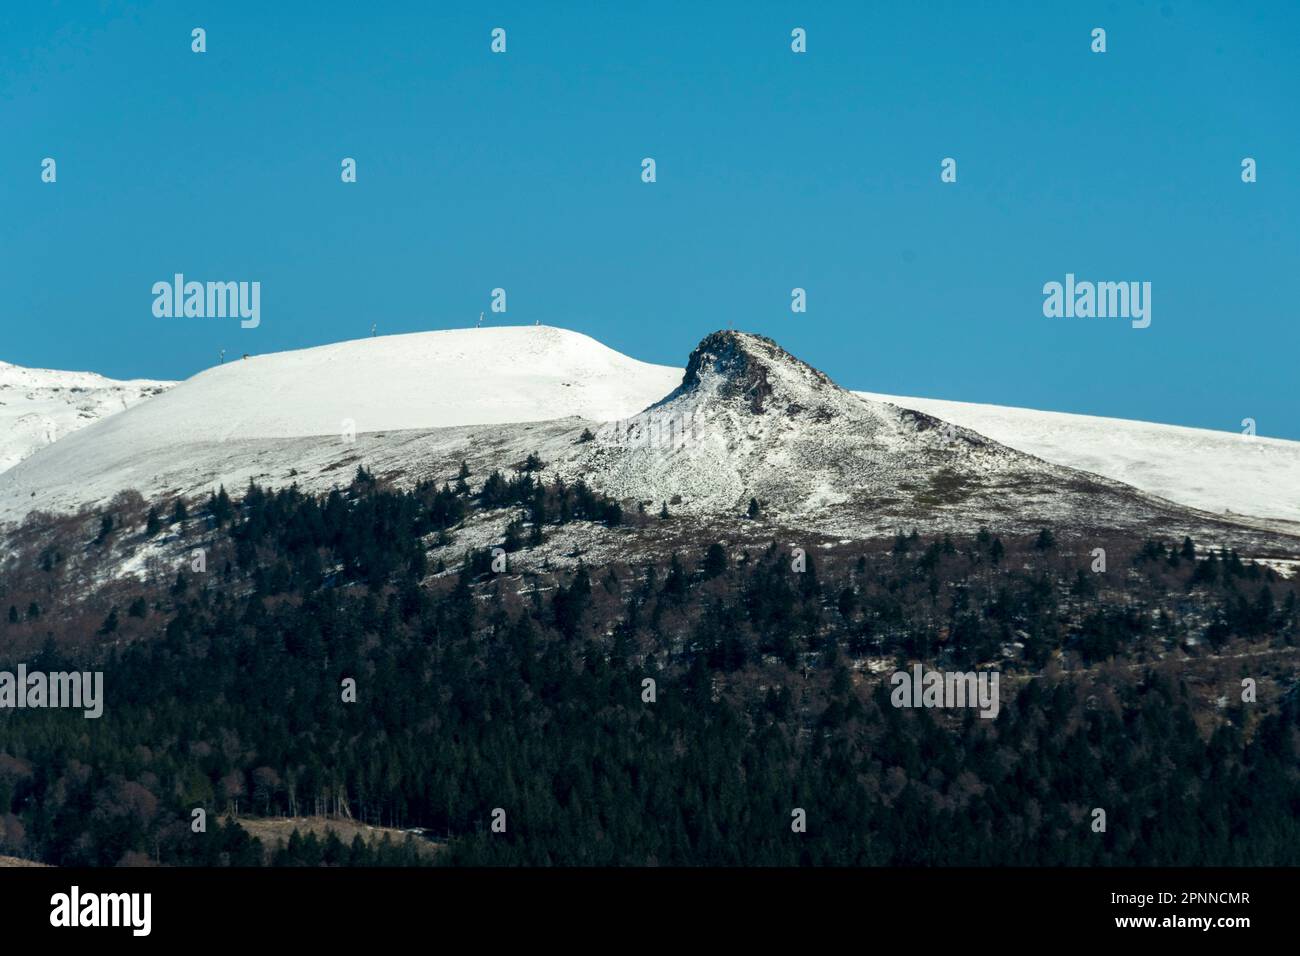 Roc de Courlande , Sancy massif in winter, regional natural park of the volcanoes of auvergne, Puy de Dome department, Auvergne Rhone Alpes, France Stock Photo